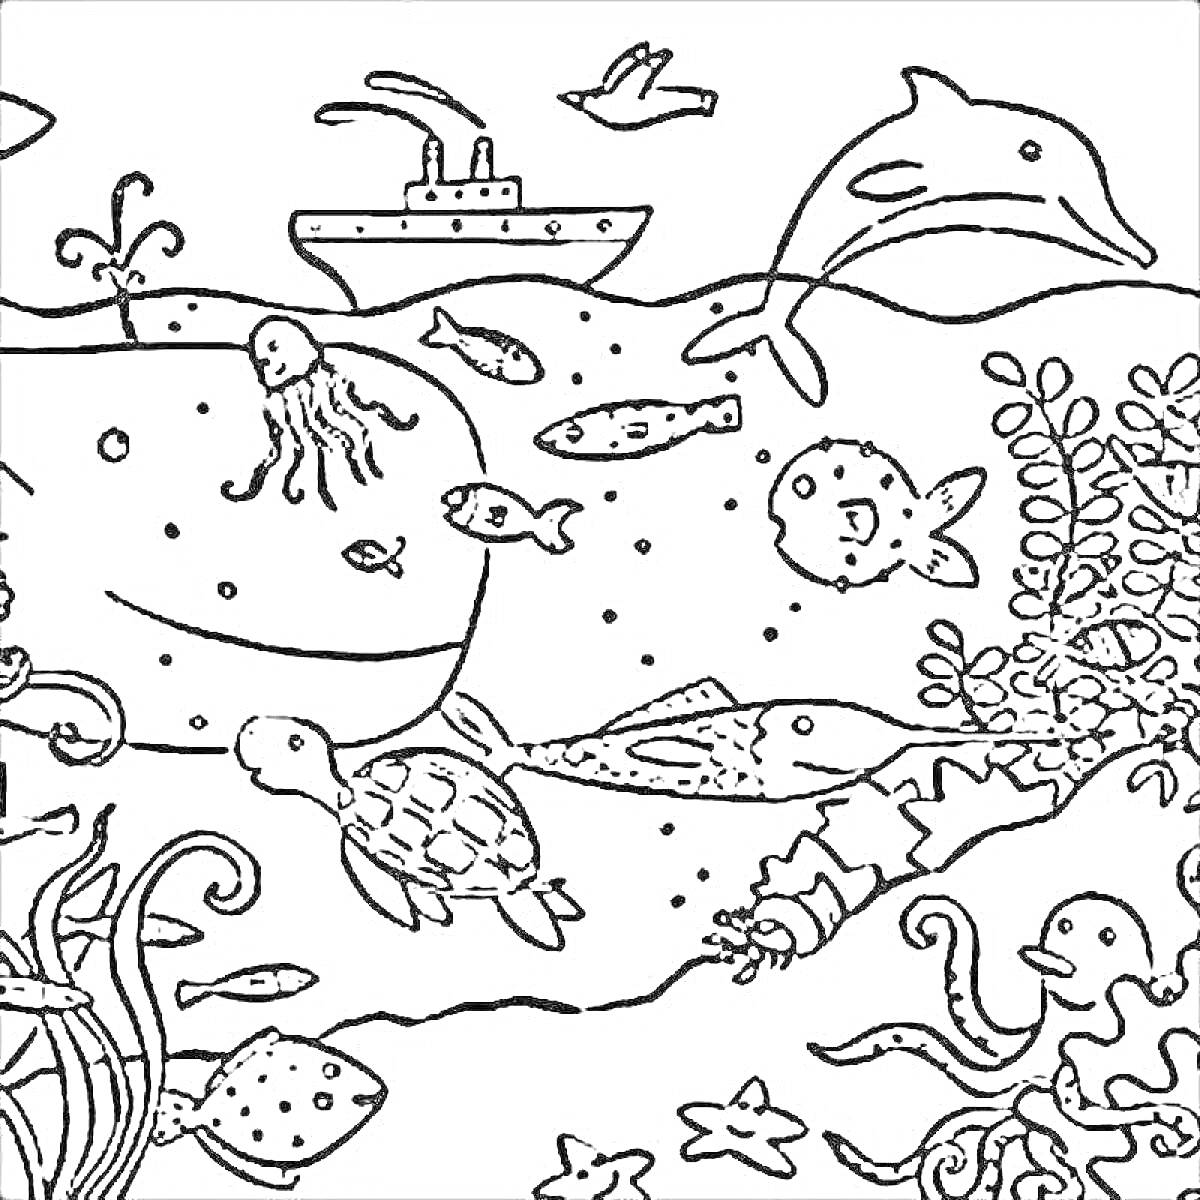 Раскраска Подводный мир с китом, черепахой, акулой, дельфином, осьминогом, медузой, рыбой-фугу, рыбками, кораллами, водорослями, пеликаном и кораблем